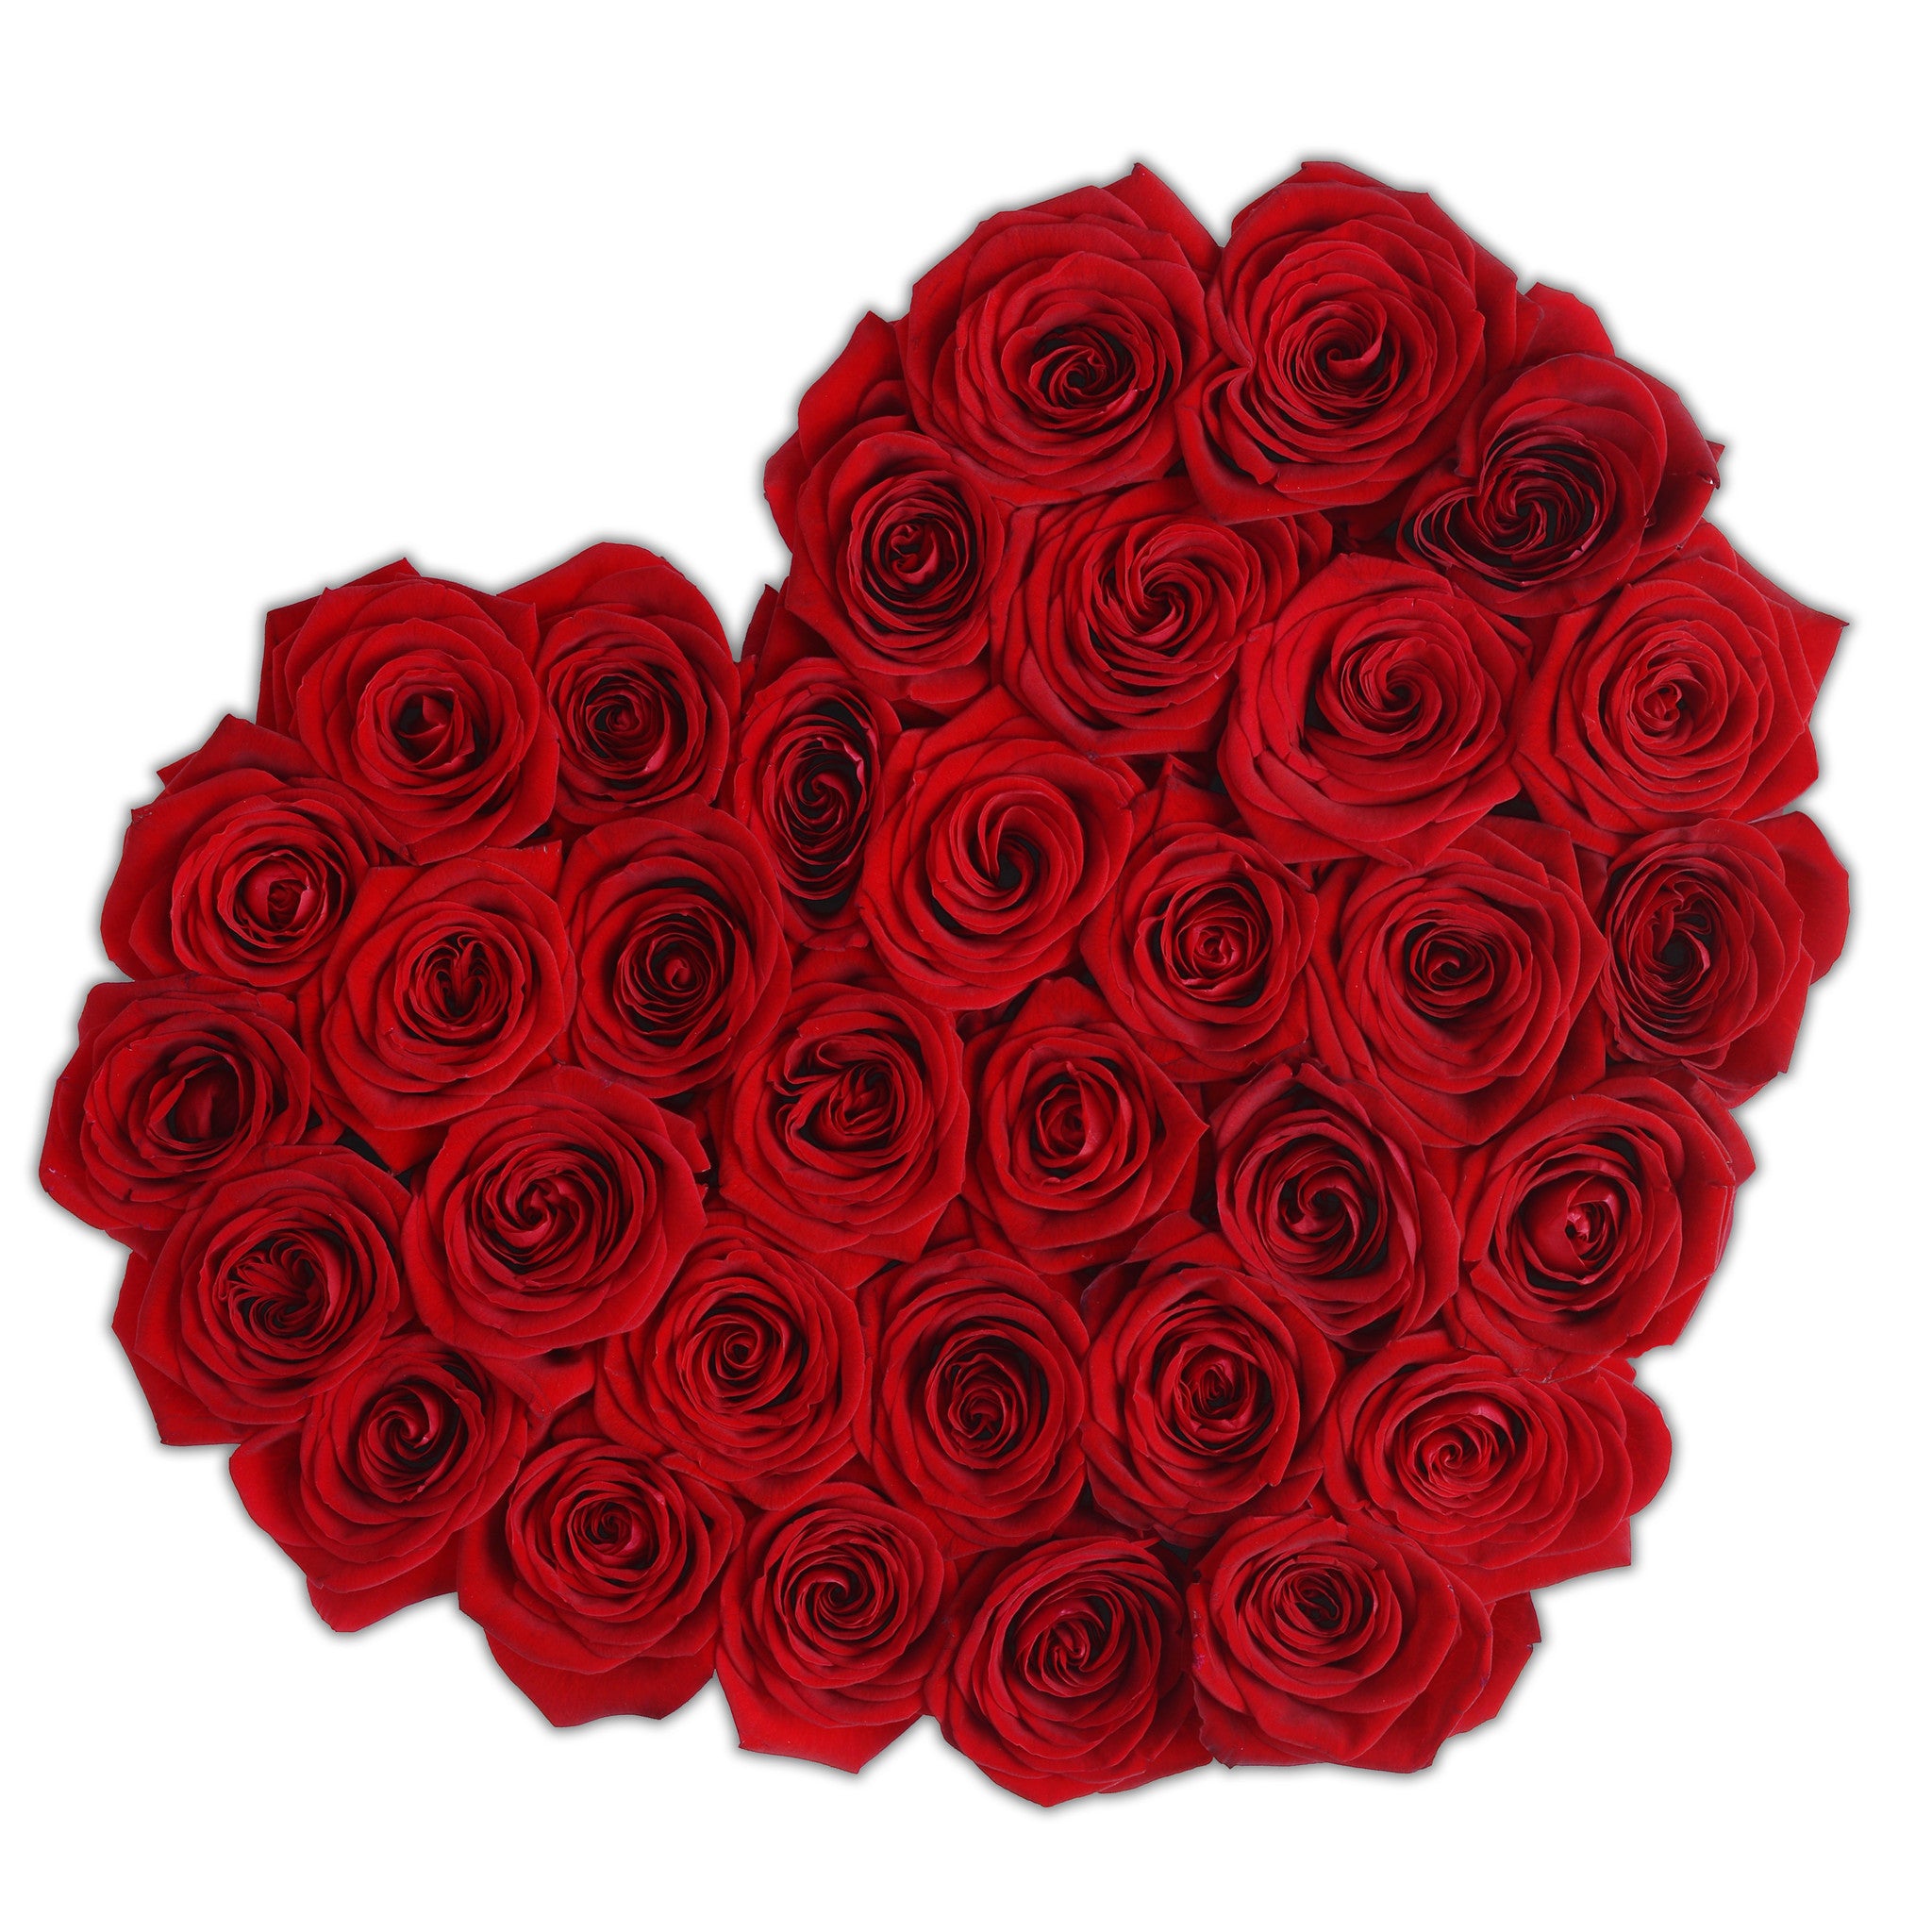 Heart - Red Roses - White Box - The Million Roses Budapest